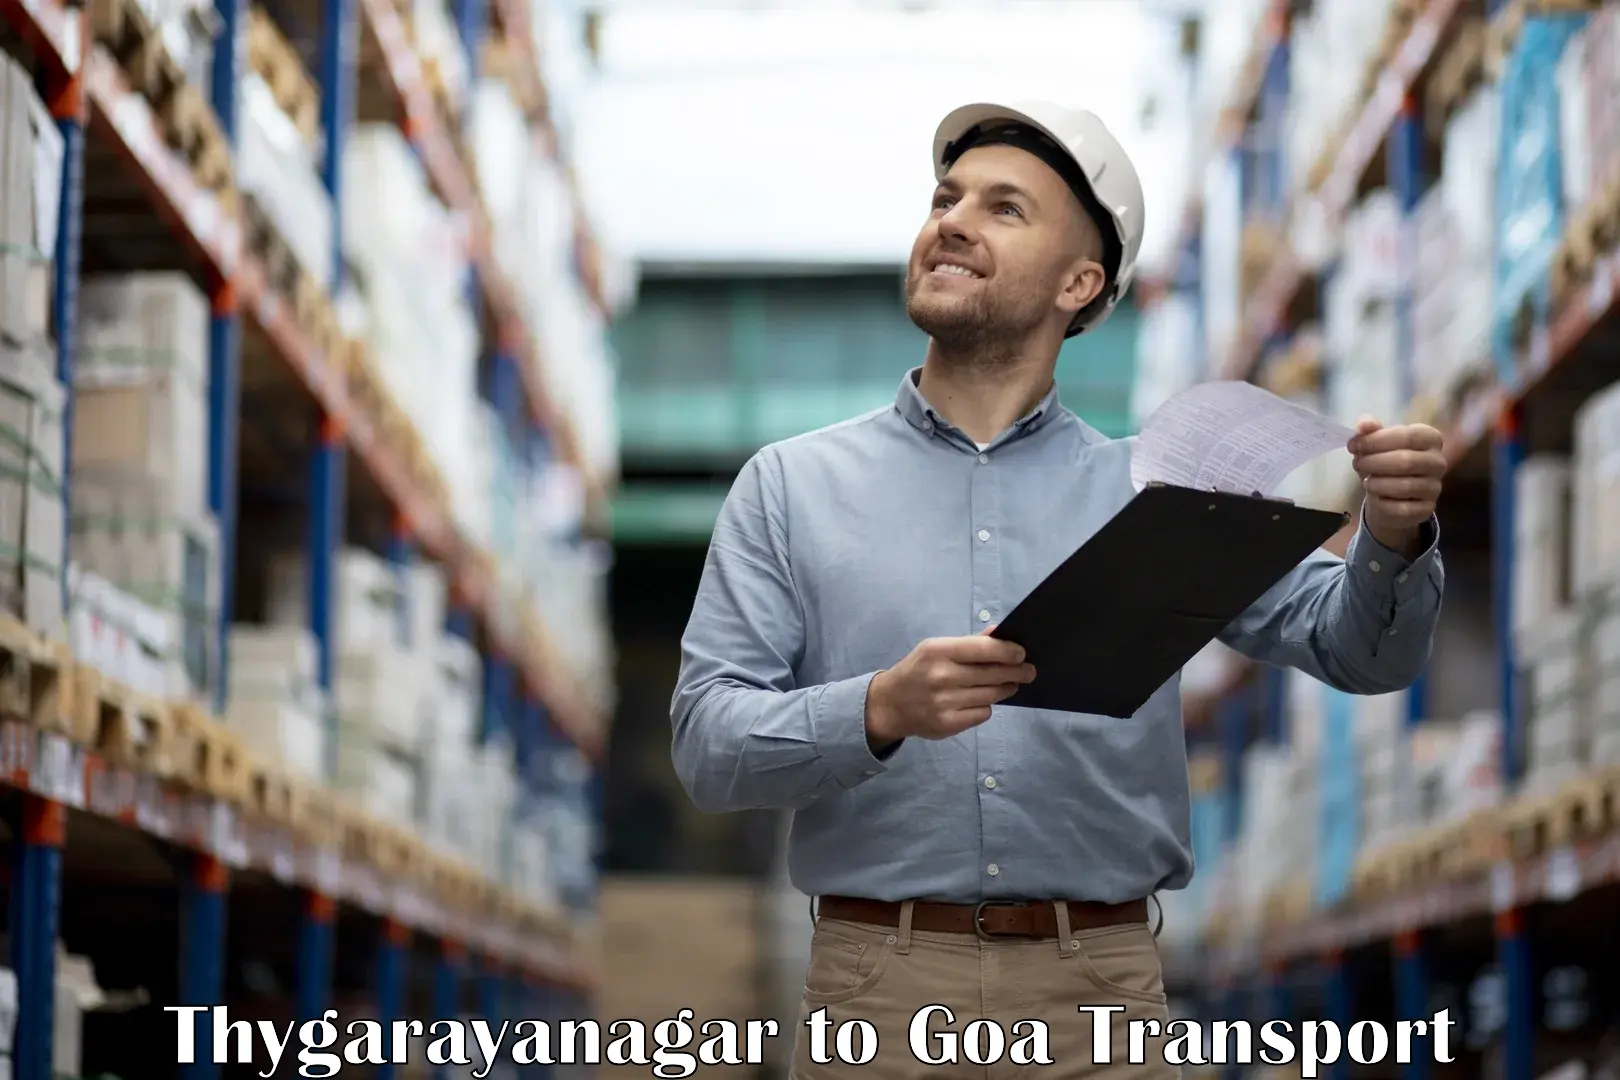 Road transport online services Thygarayanagar to Margao